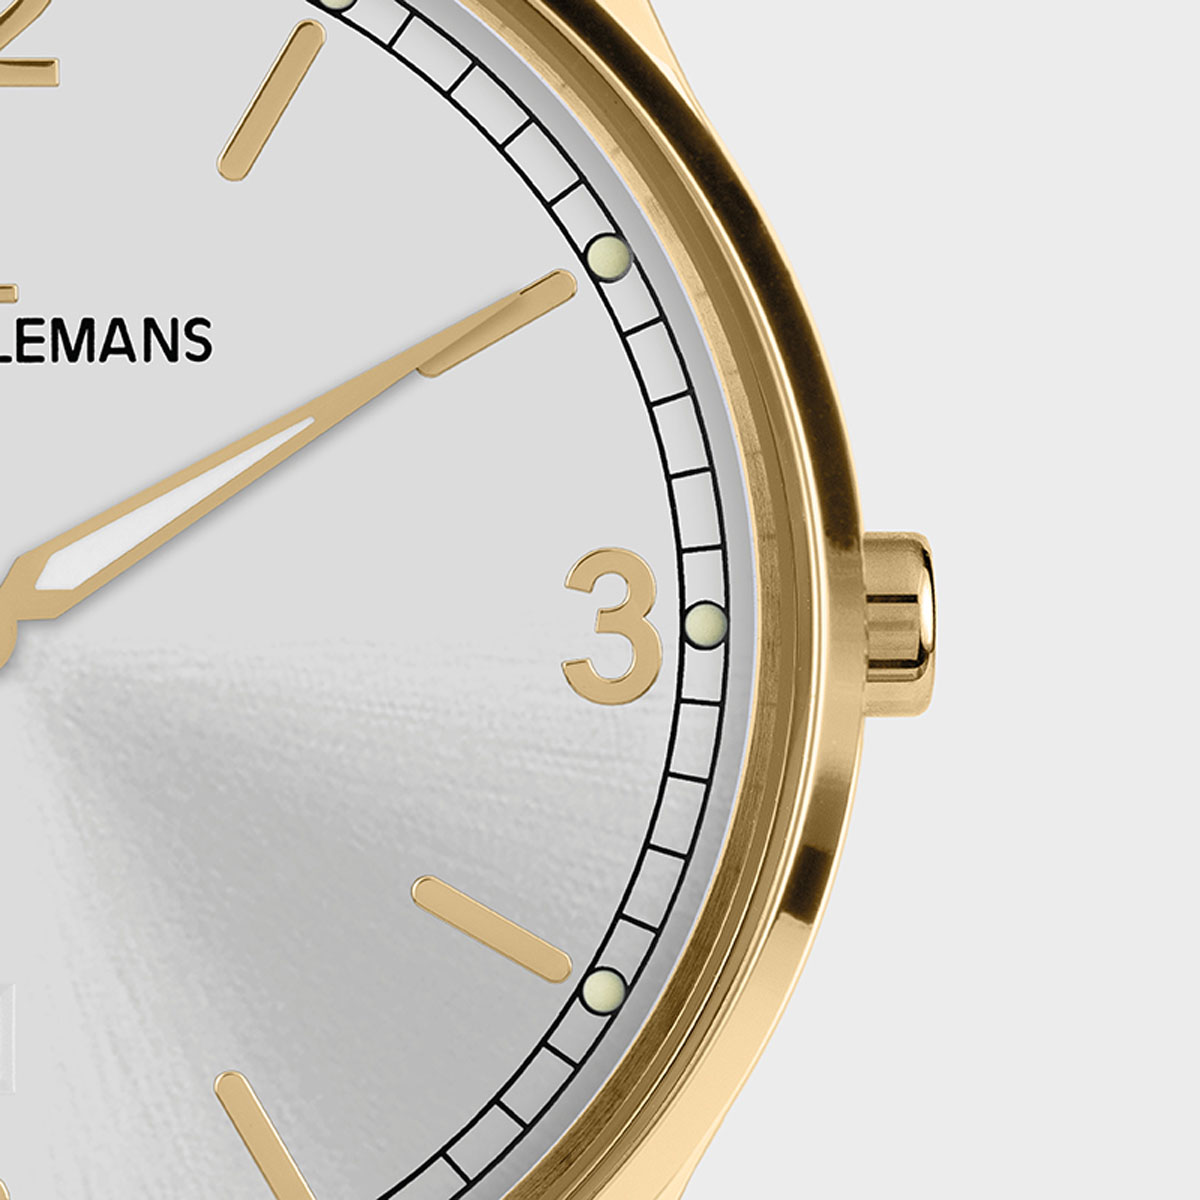 1-2128D, наручные часы Jacques Lemans